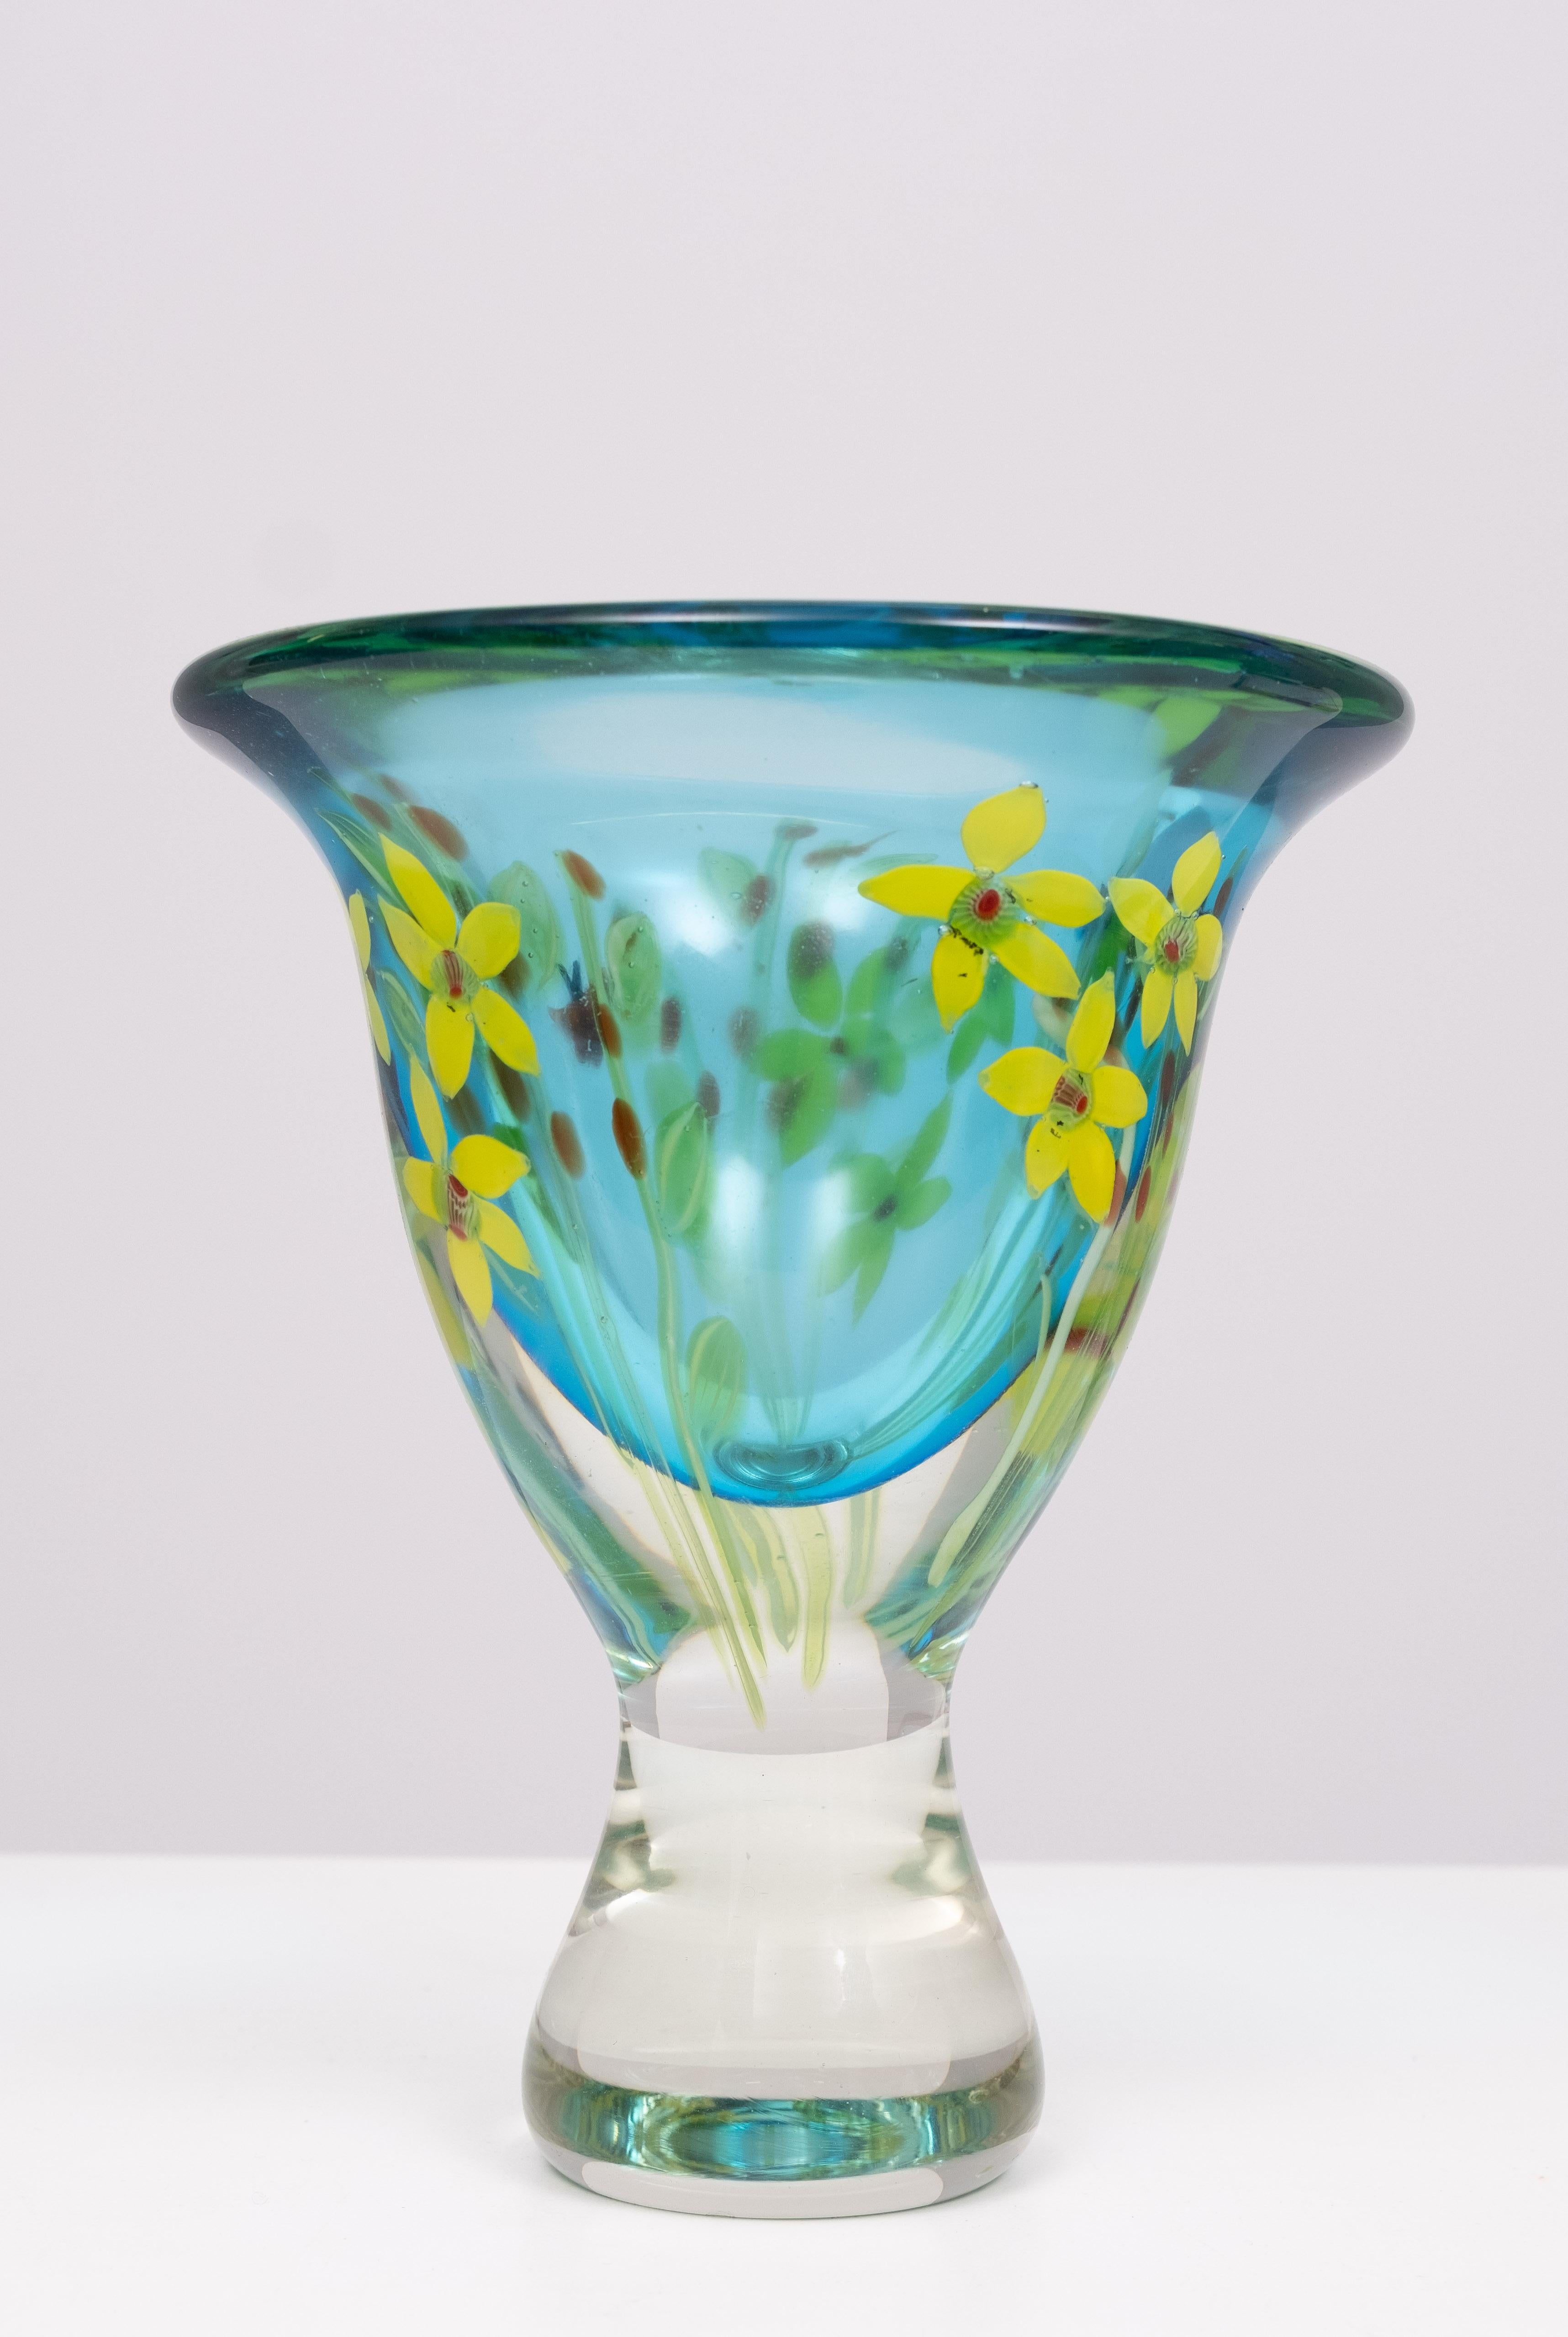 Berit Johansson Art Glass Vase by Murano 1970s Sweden  For Sale 1